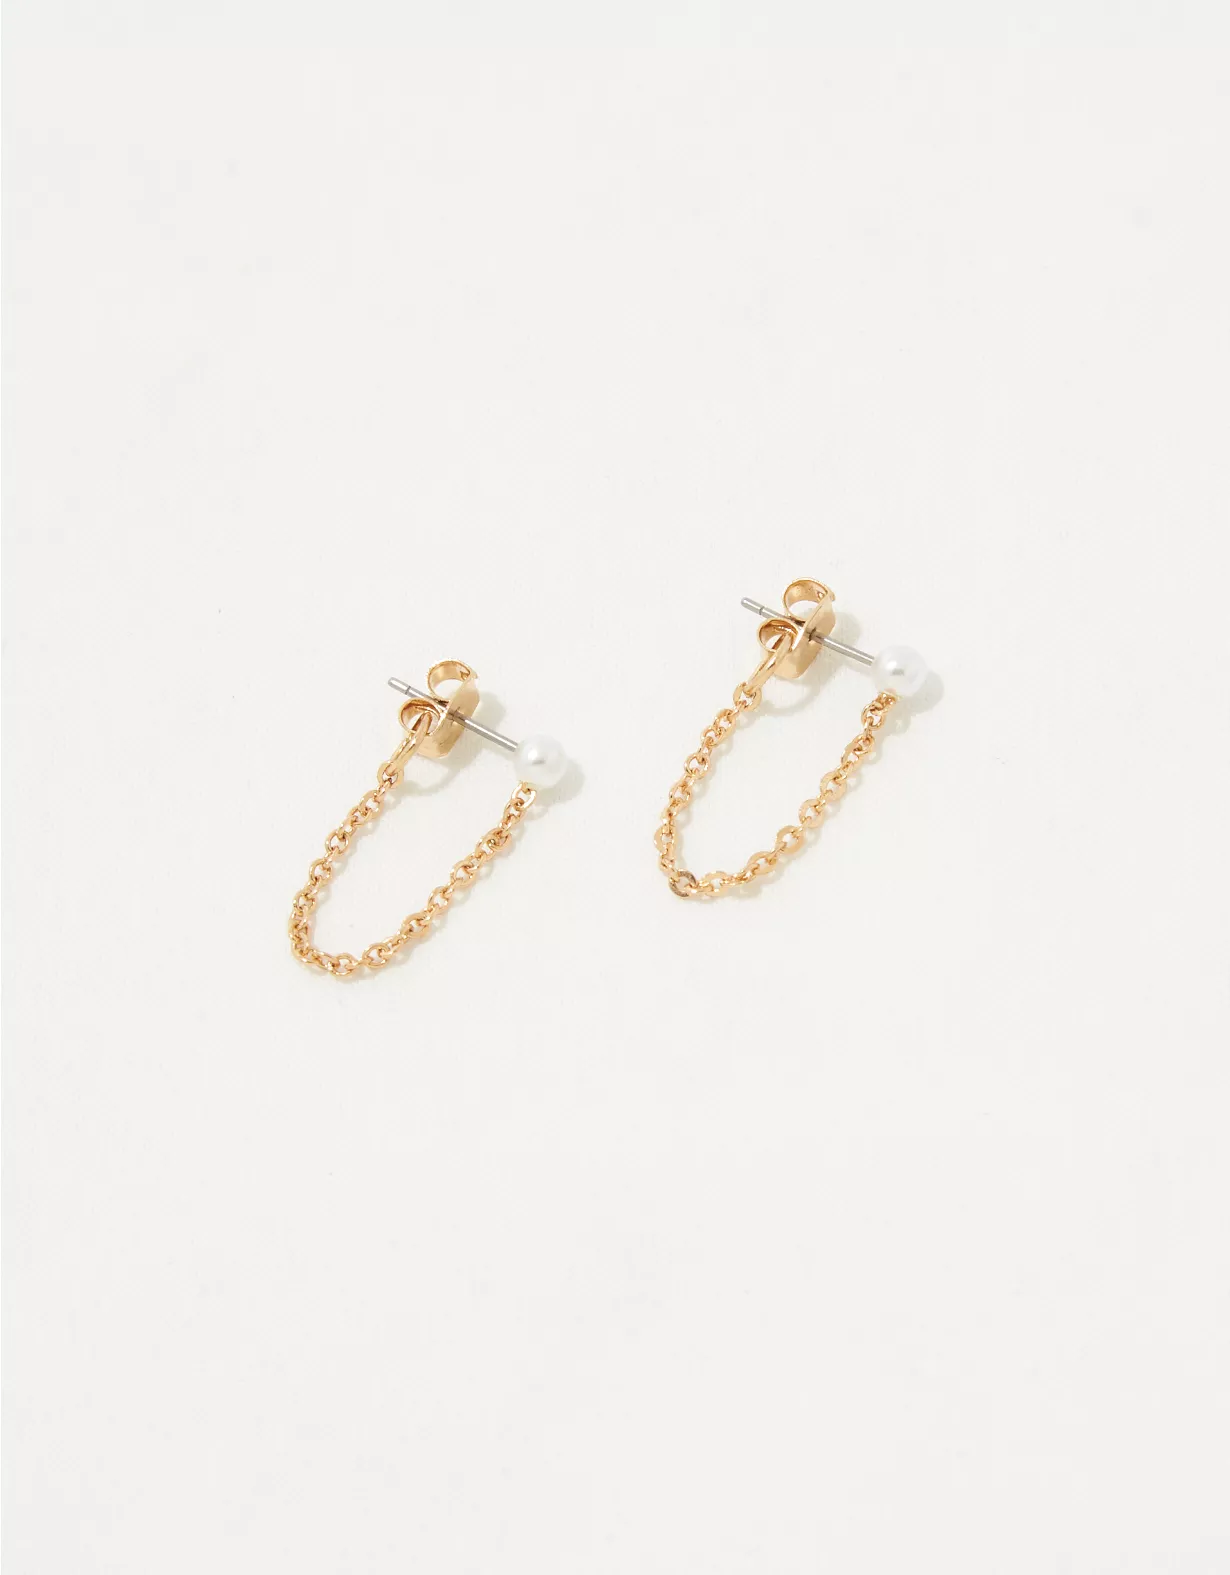 Aerie Pearl Chain Stud Earrings